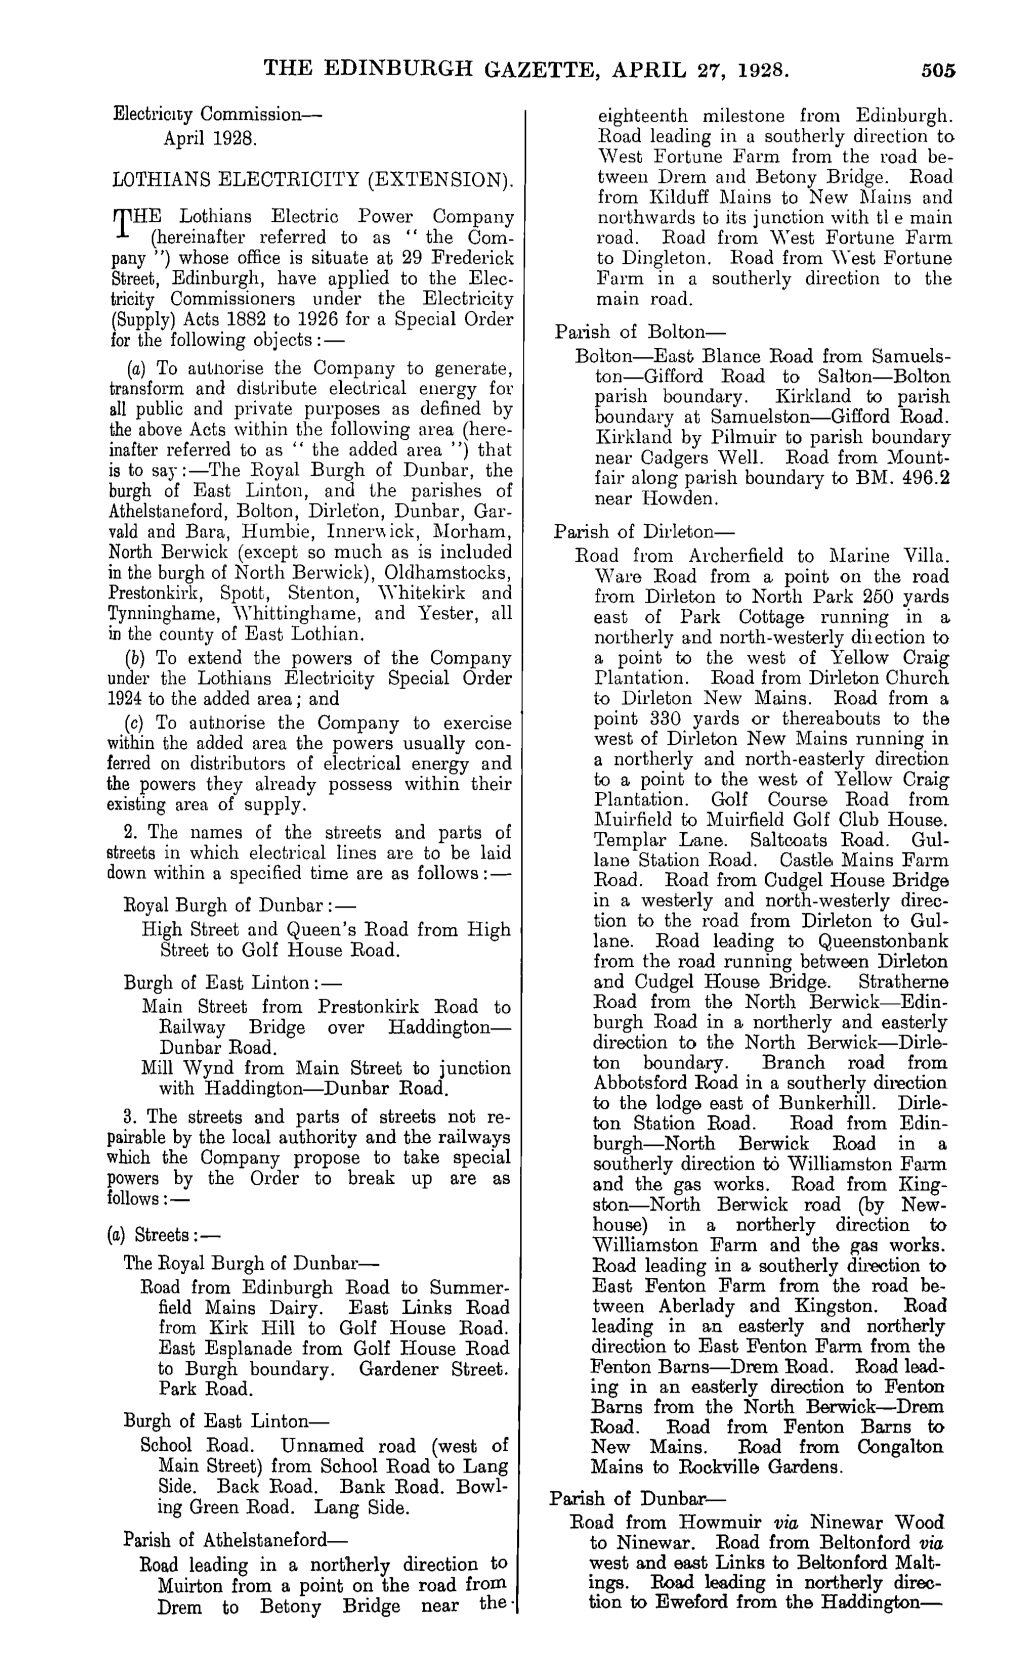 The Edinburgh Gazette, April 27, 1928. 505